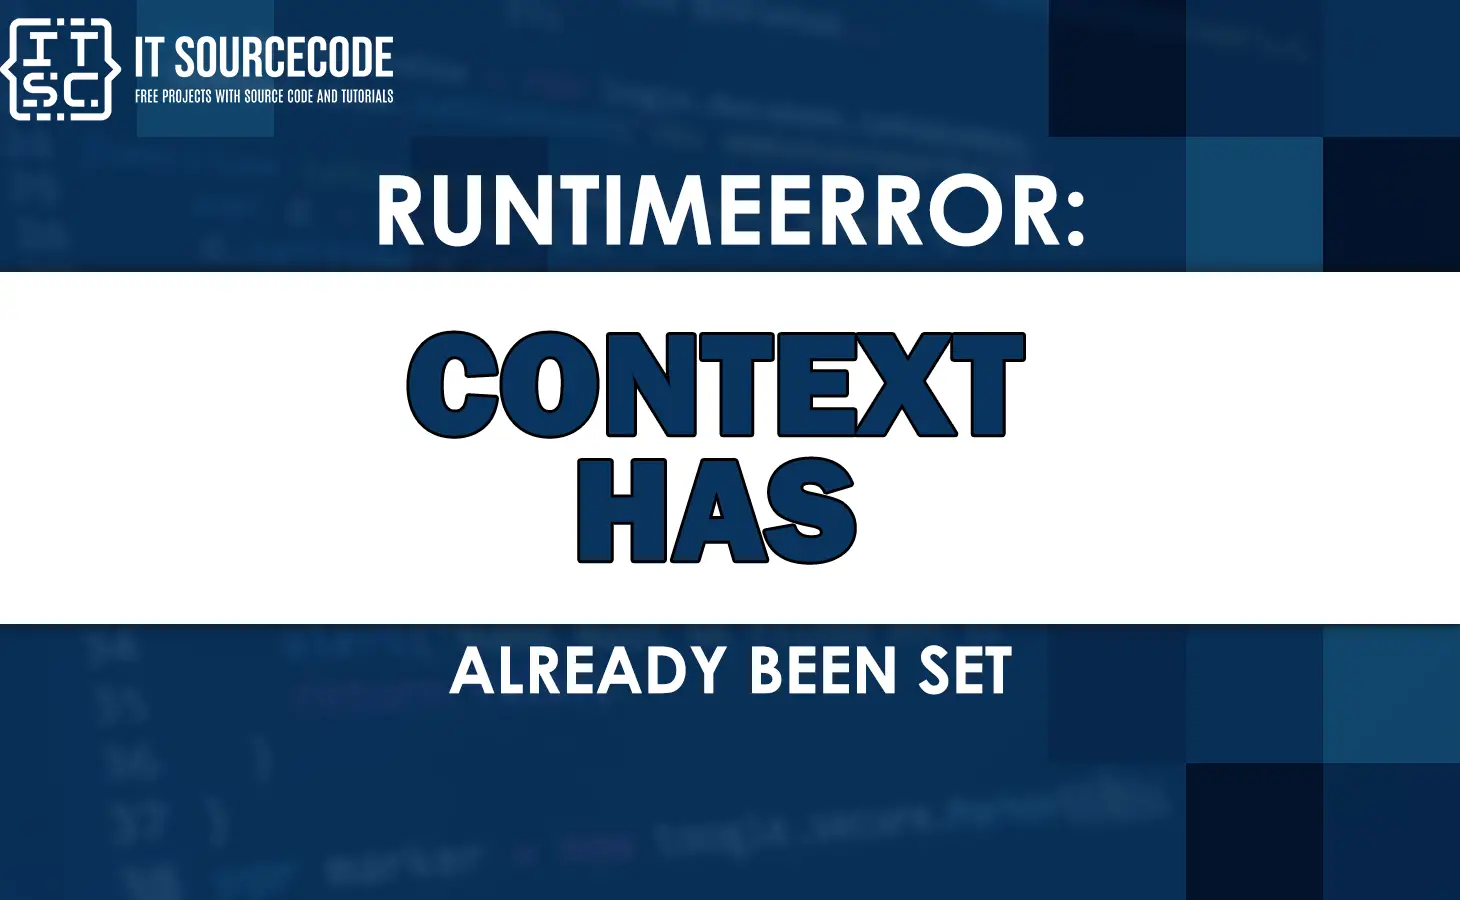 Runtimeerror context has already been set